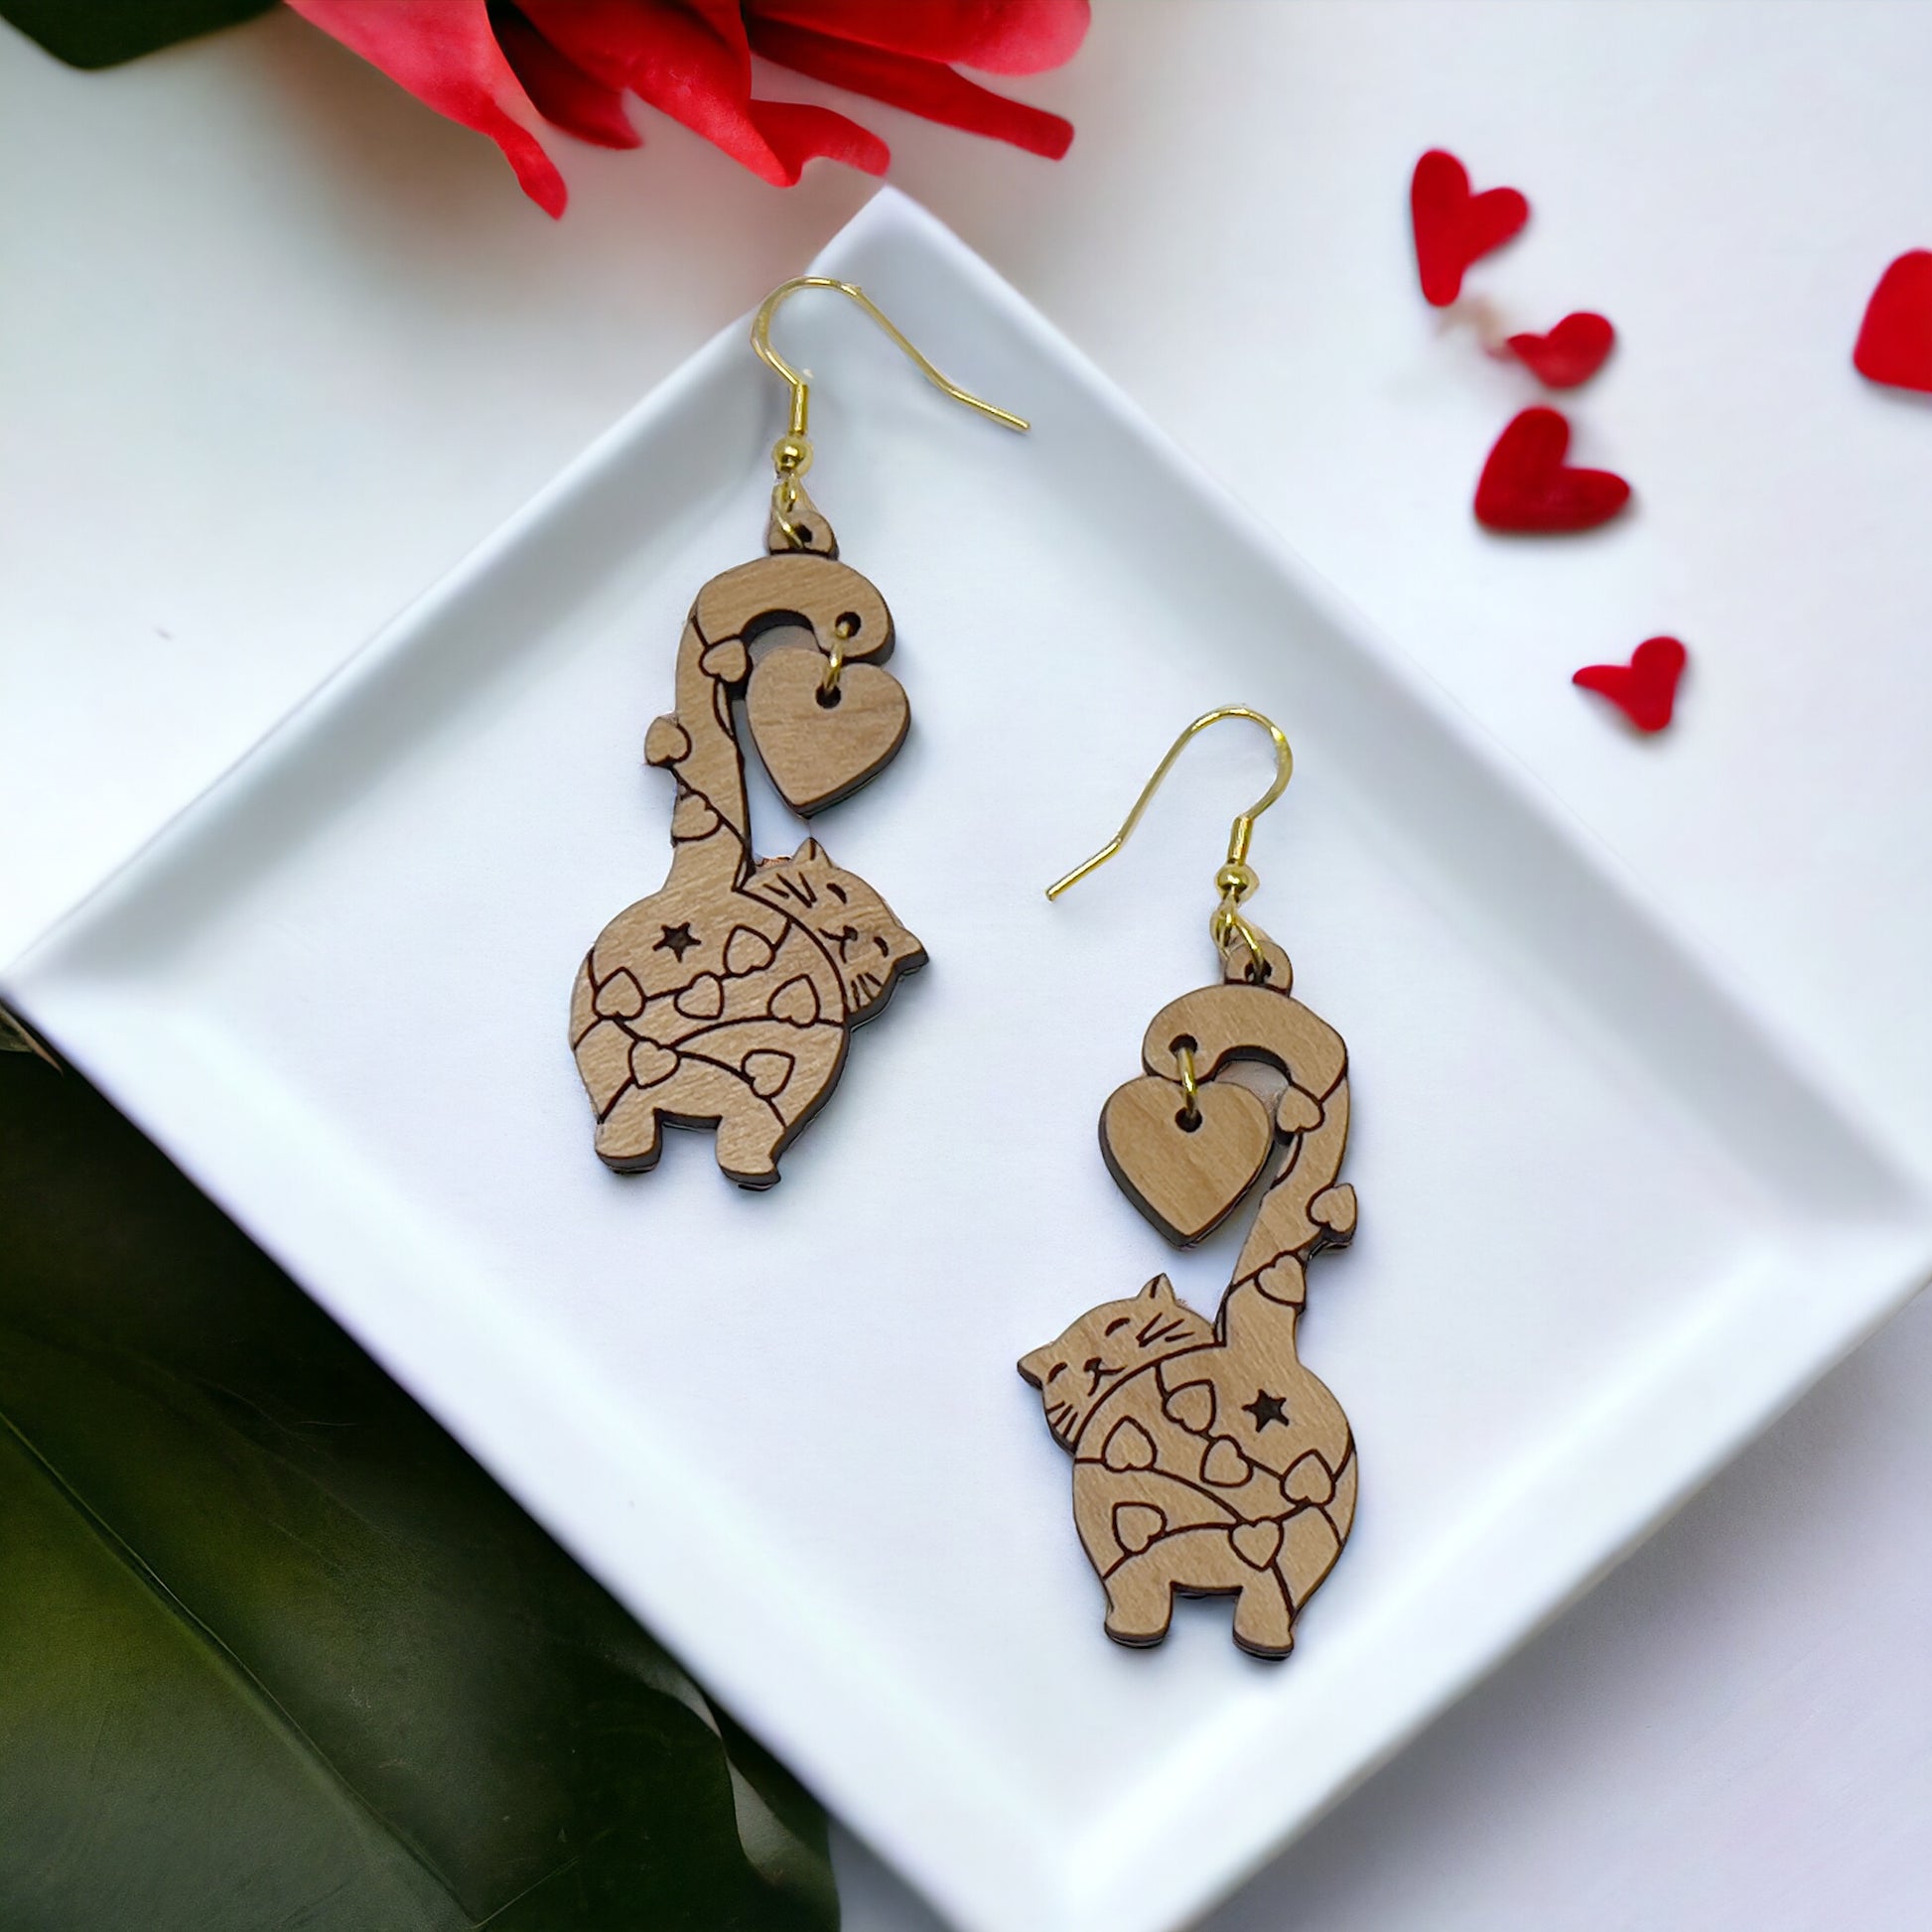 Cat Earrings, Wood Dangle Heart Earrings, Cute Feline Valentines Gifts for Cat Lover Girlfriend, Adorable Animal Jewelry, Womens Earring Set